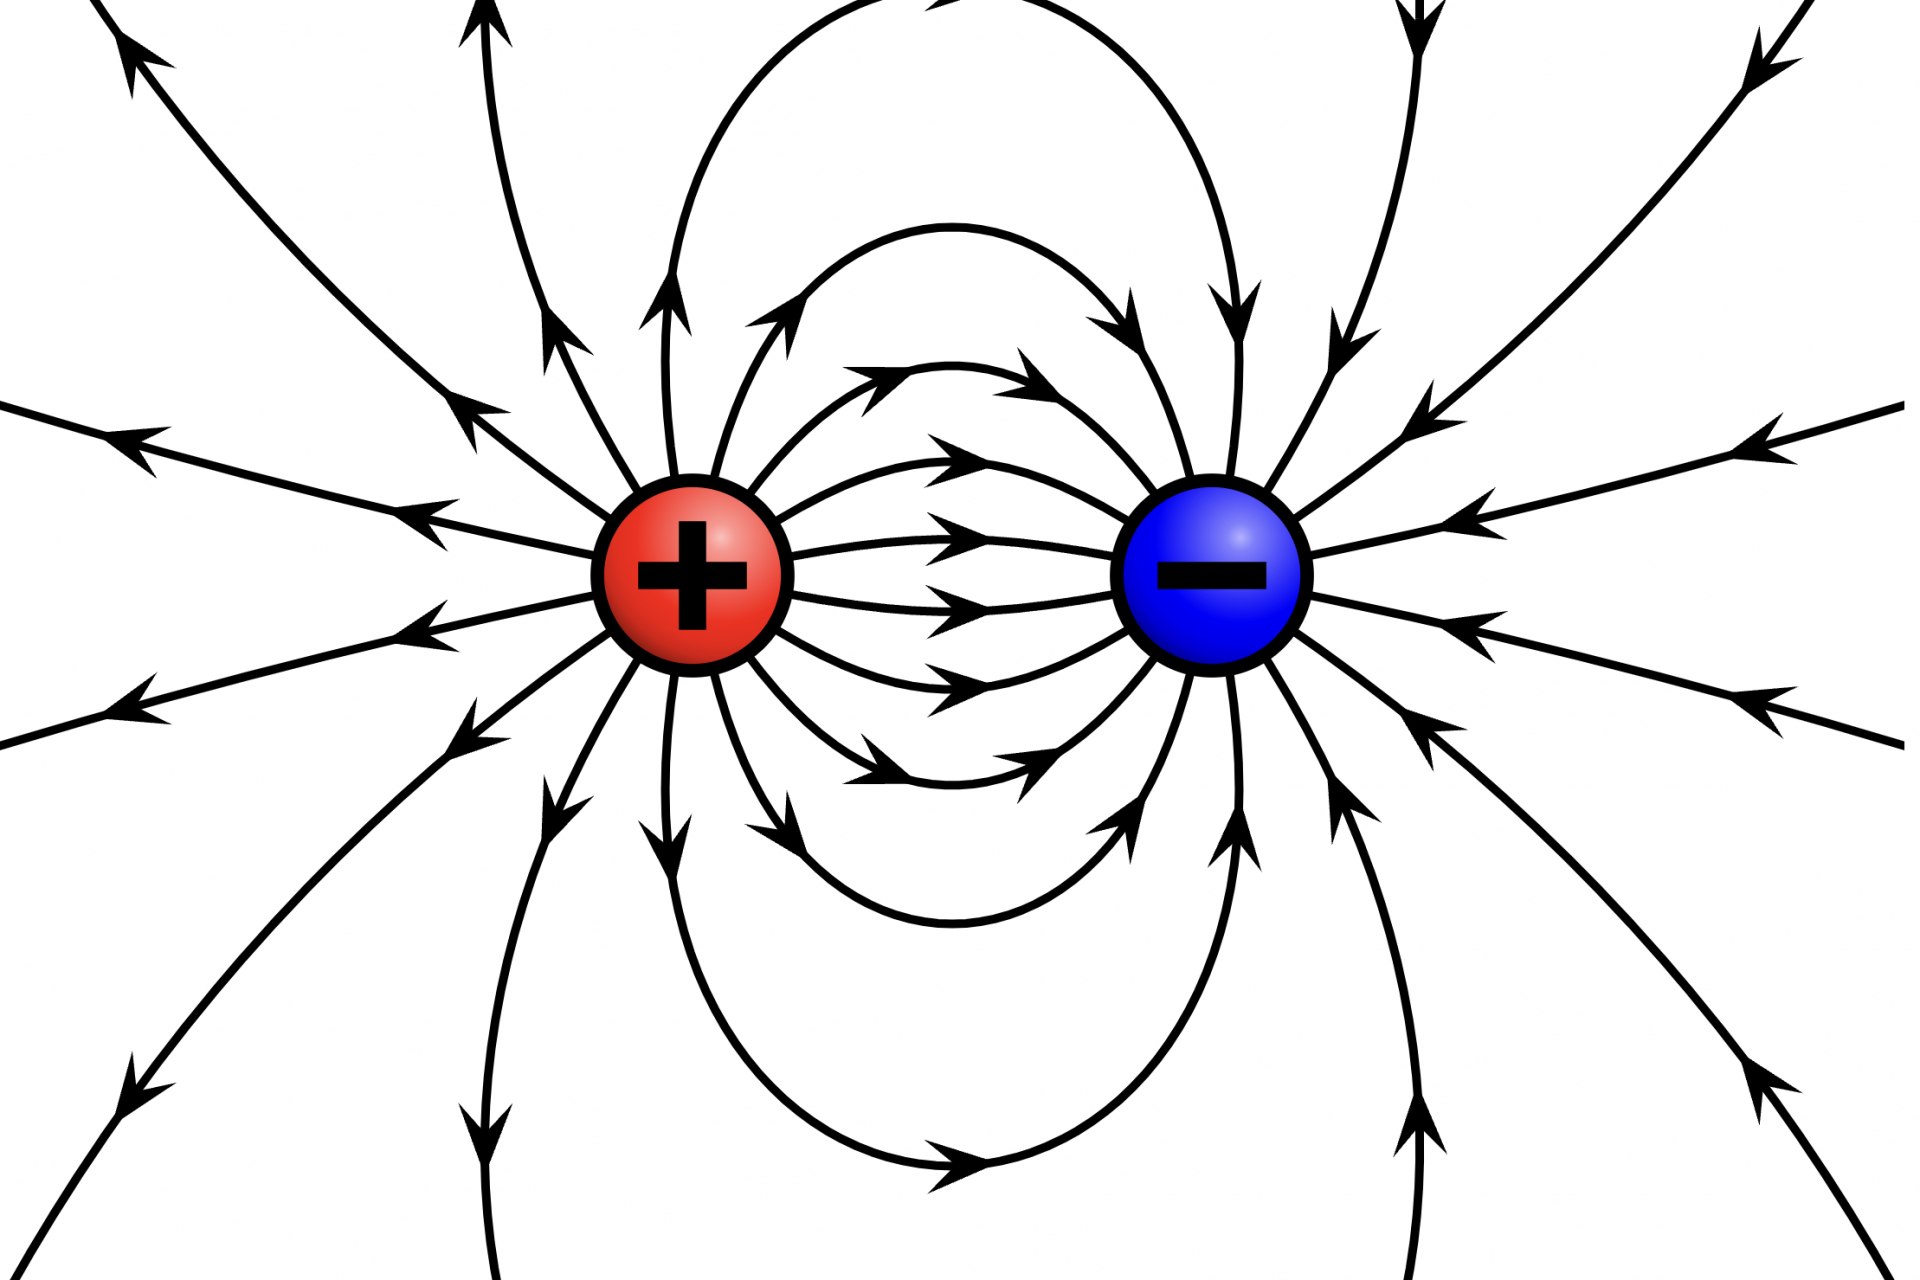 Magnetic fields 